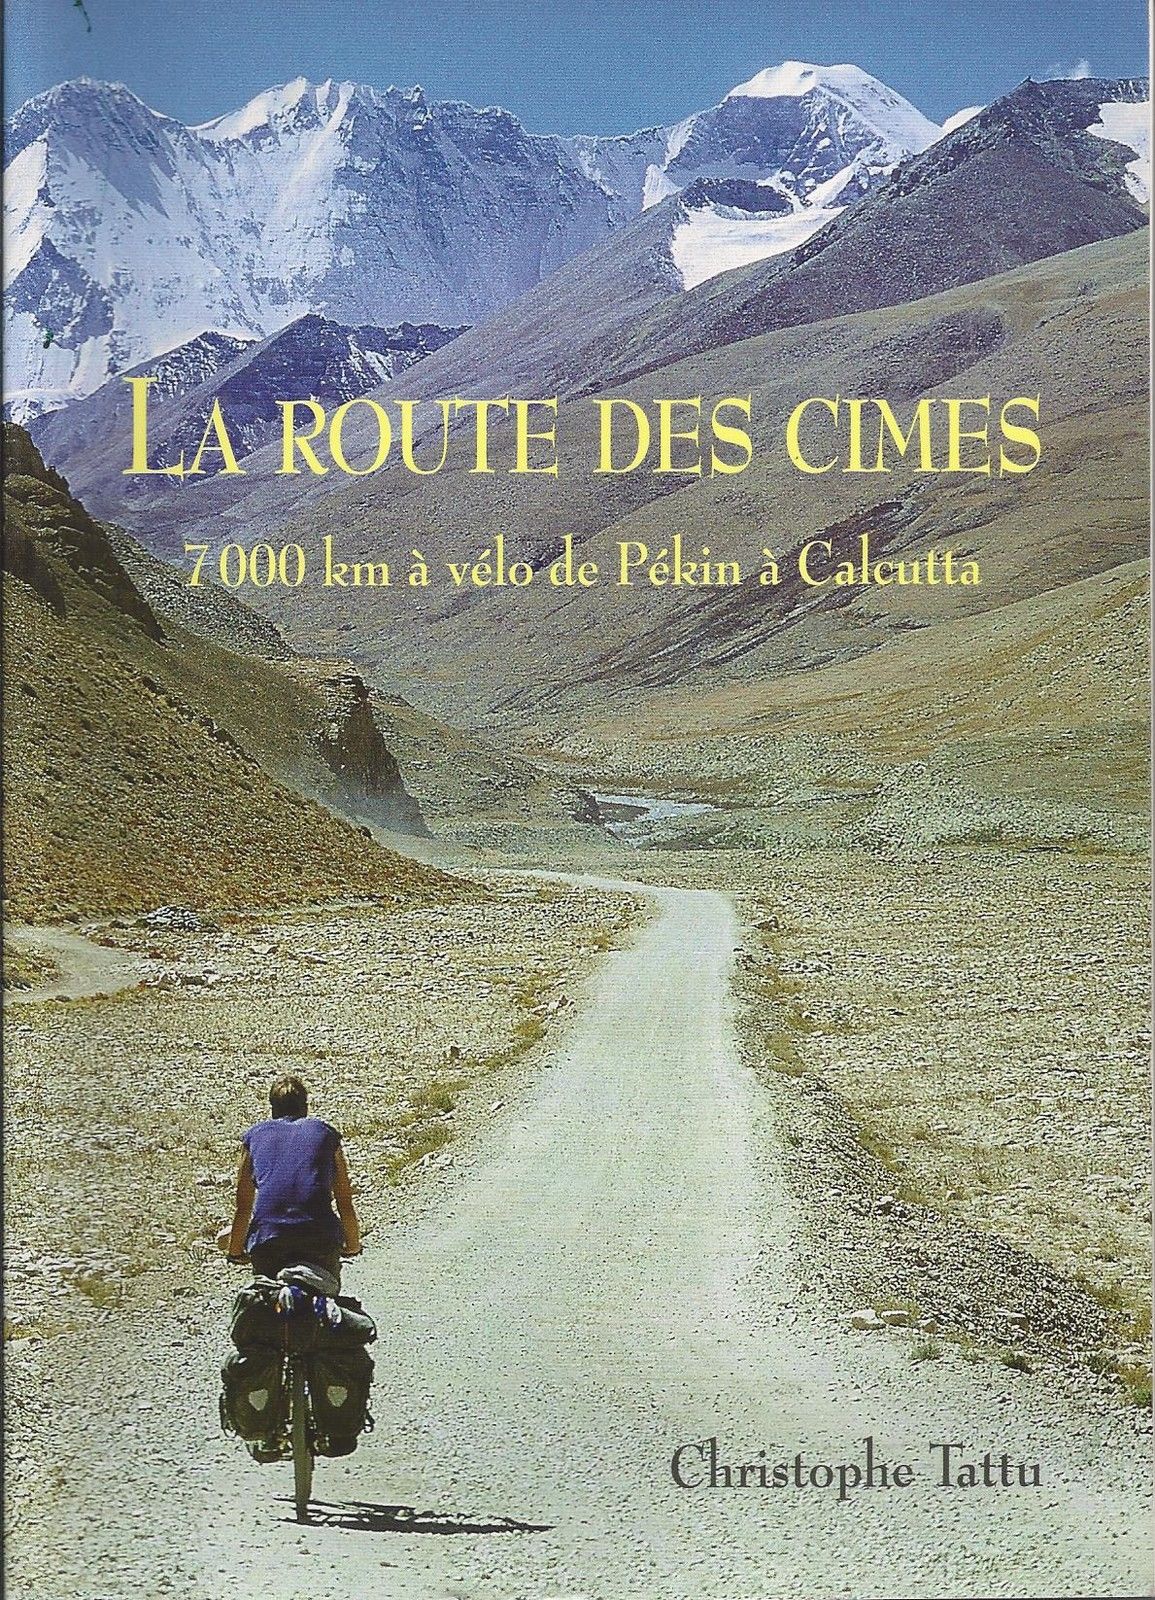 Première de couverture du livre de Christophe tattu, la route des cimes 7000 km à vélo de Pékin a Calcutta